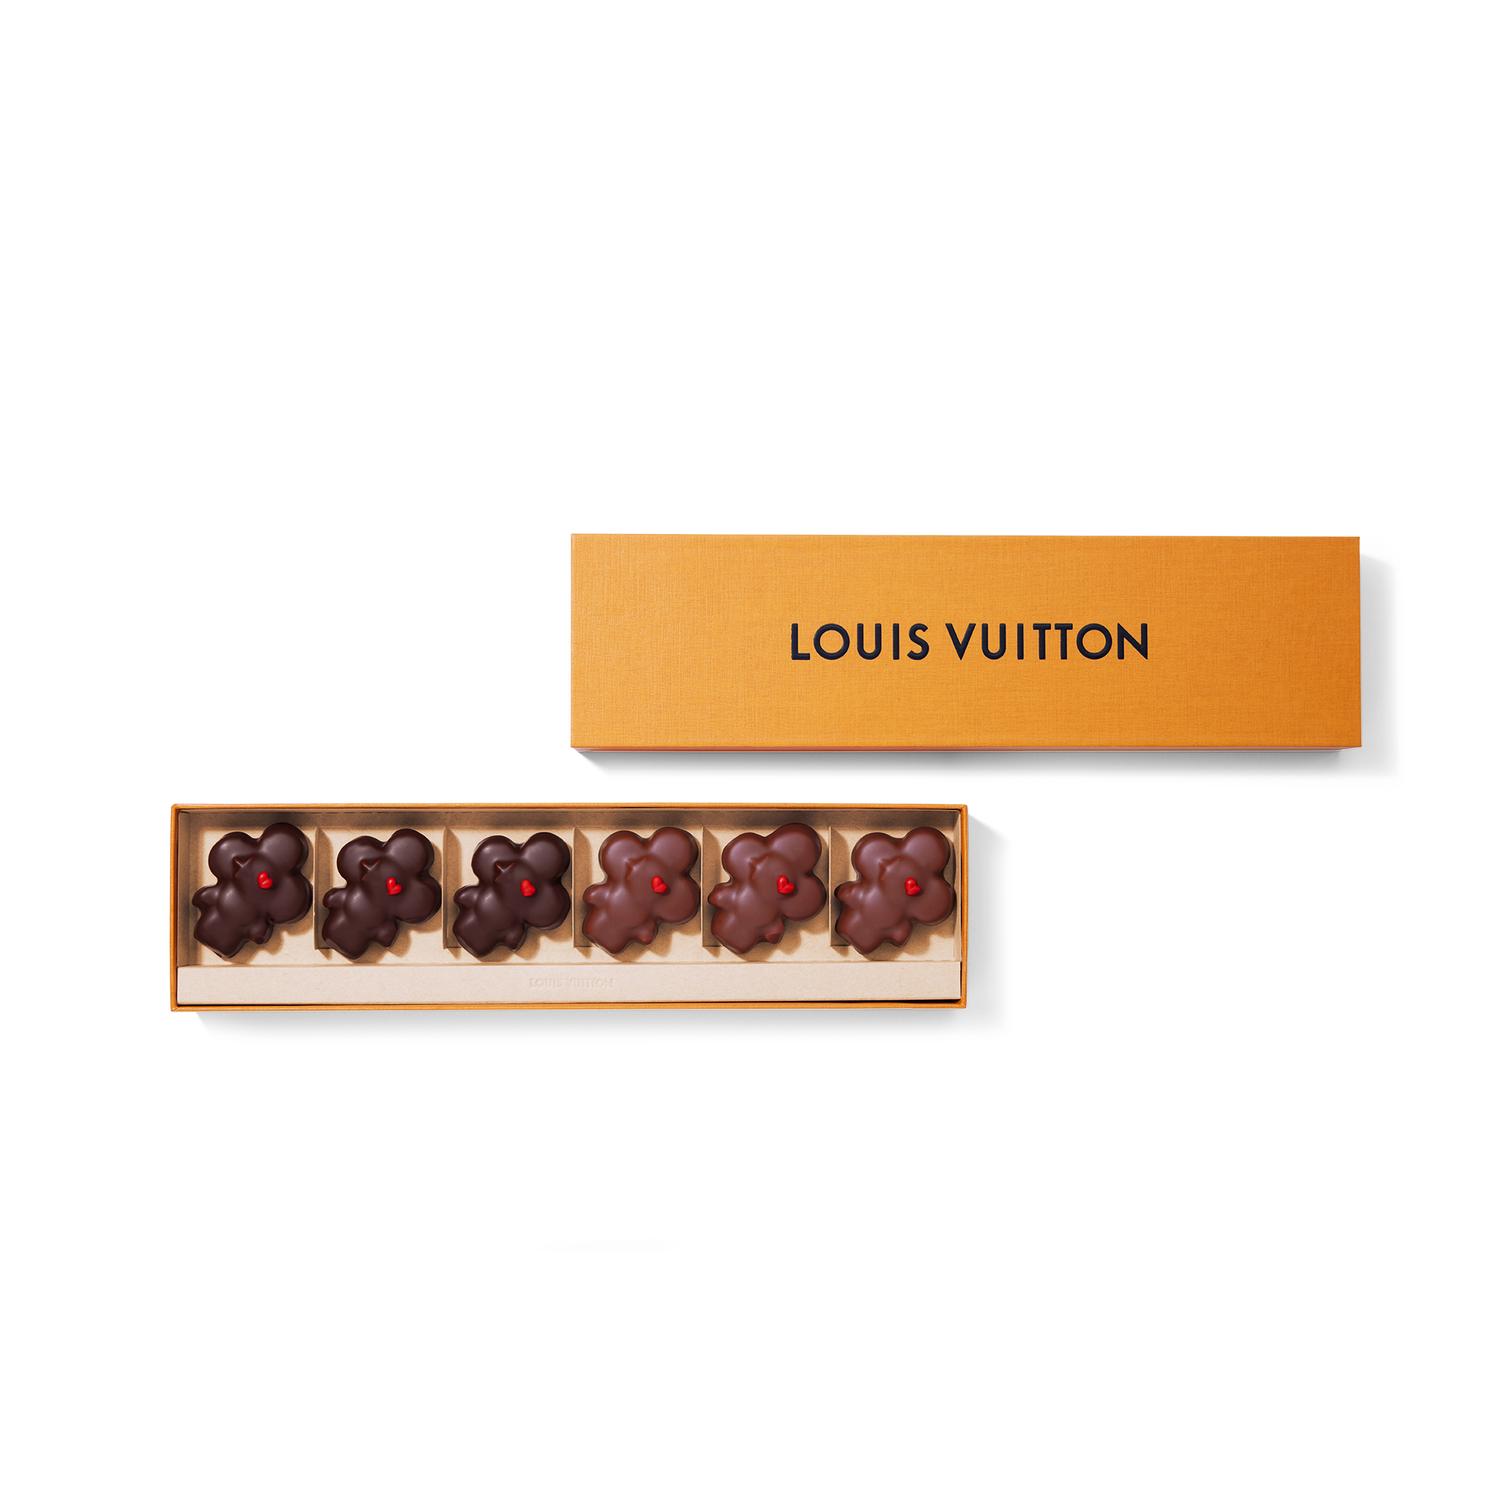 Louis Vuitton chocolat idée cadeau saint valentin